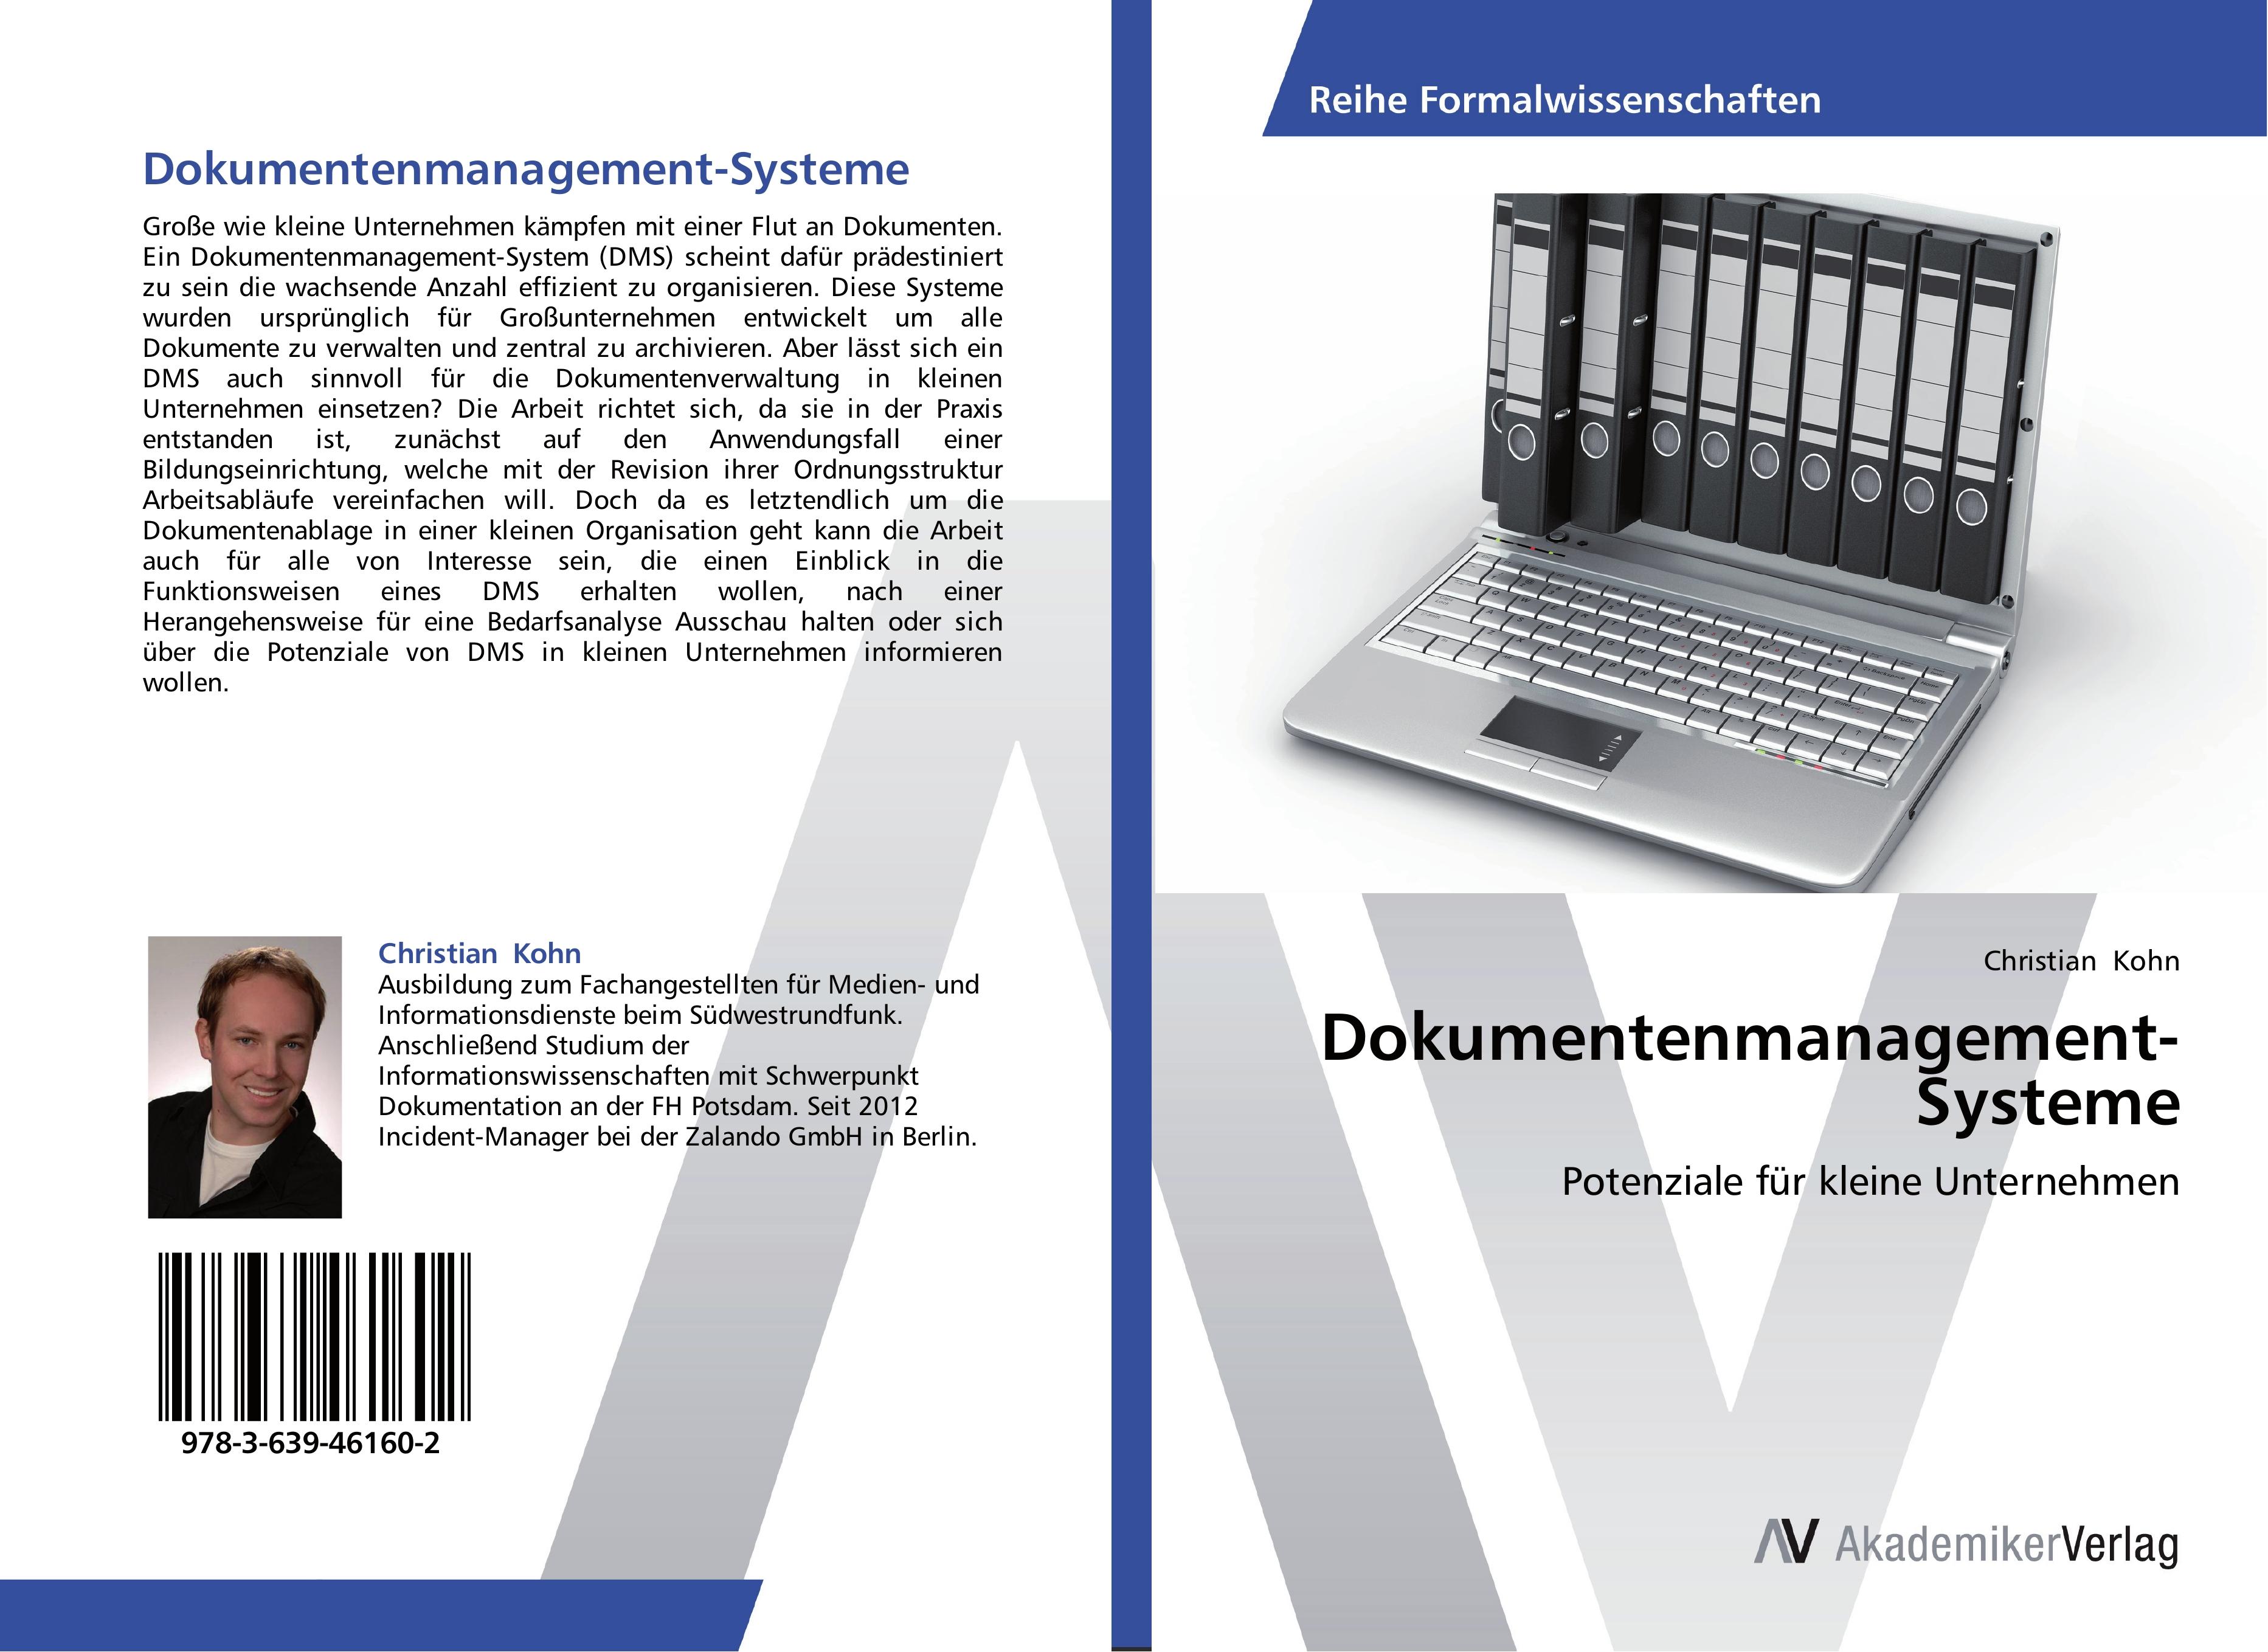 Dokumentenmanagement-Systeme - Christian Kohn